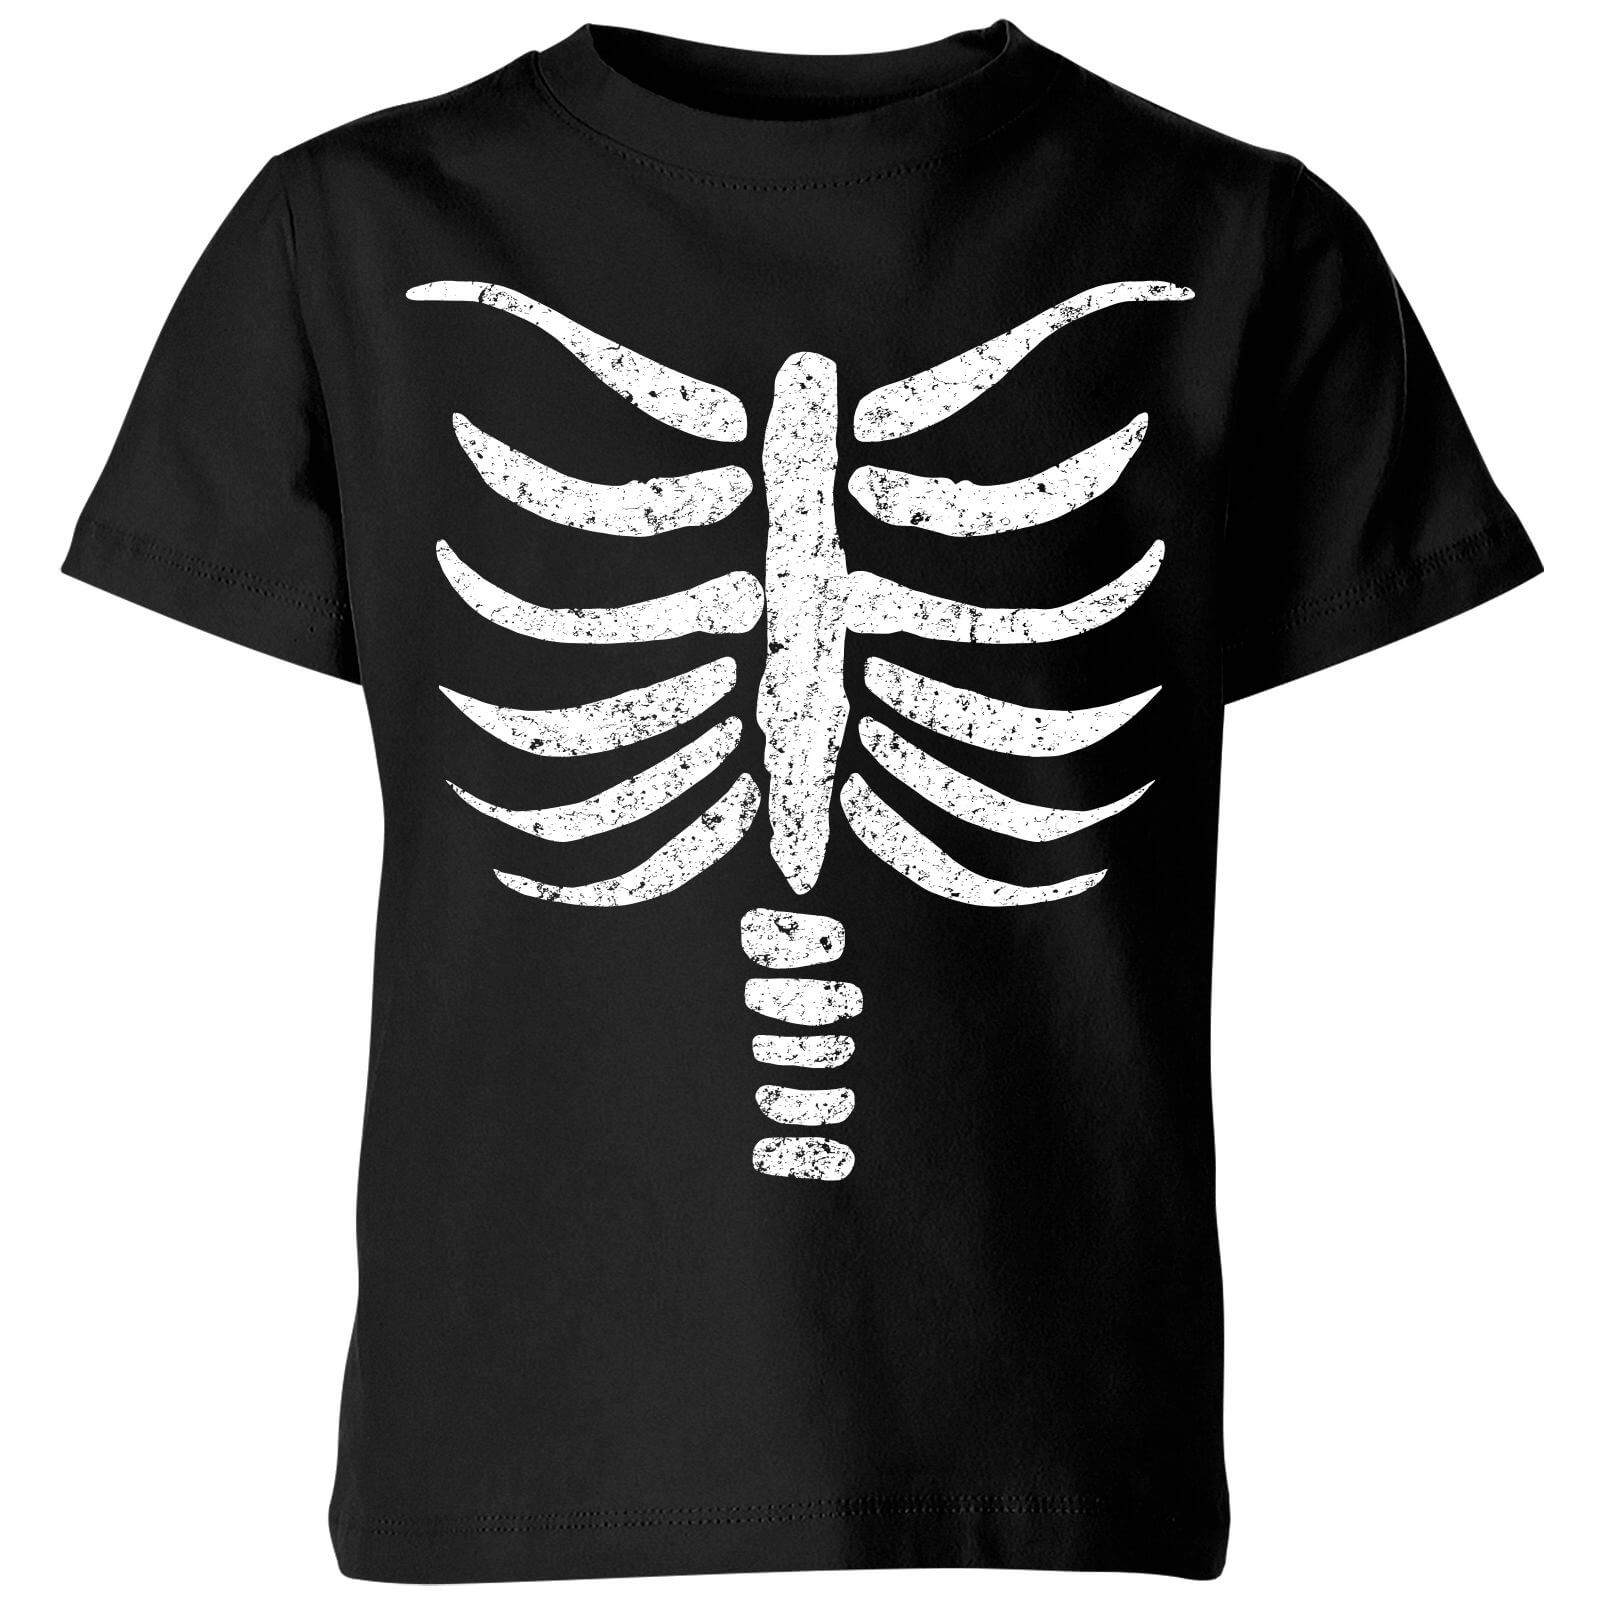 Skeleton Kids' T-Shirt - Black - 7-8 Years - Black